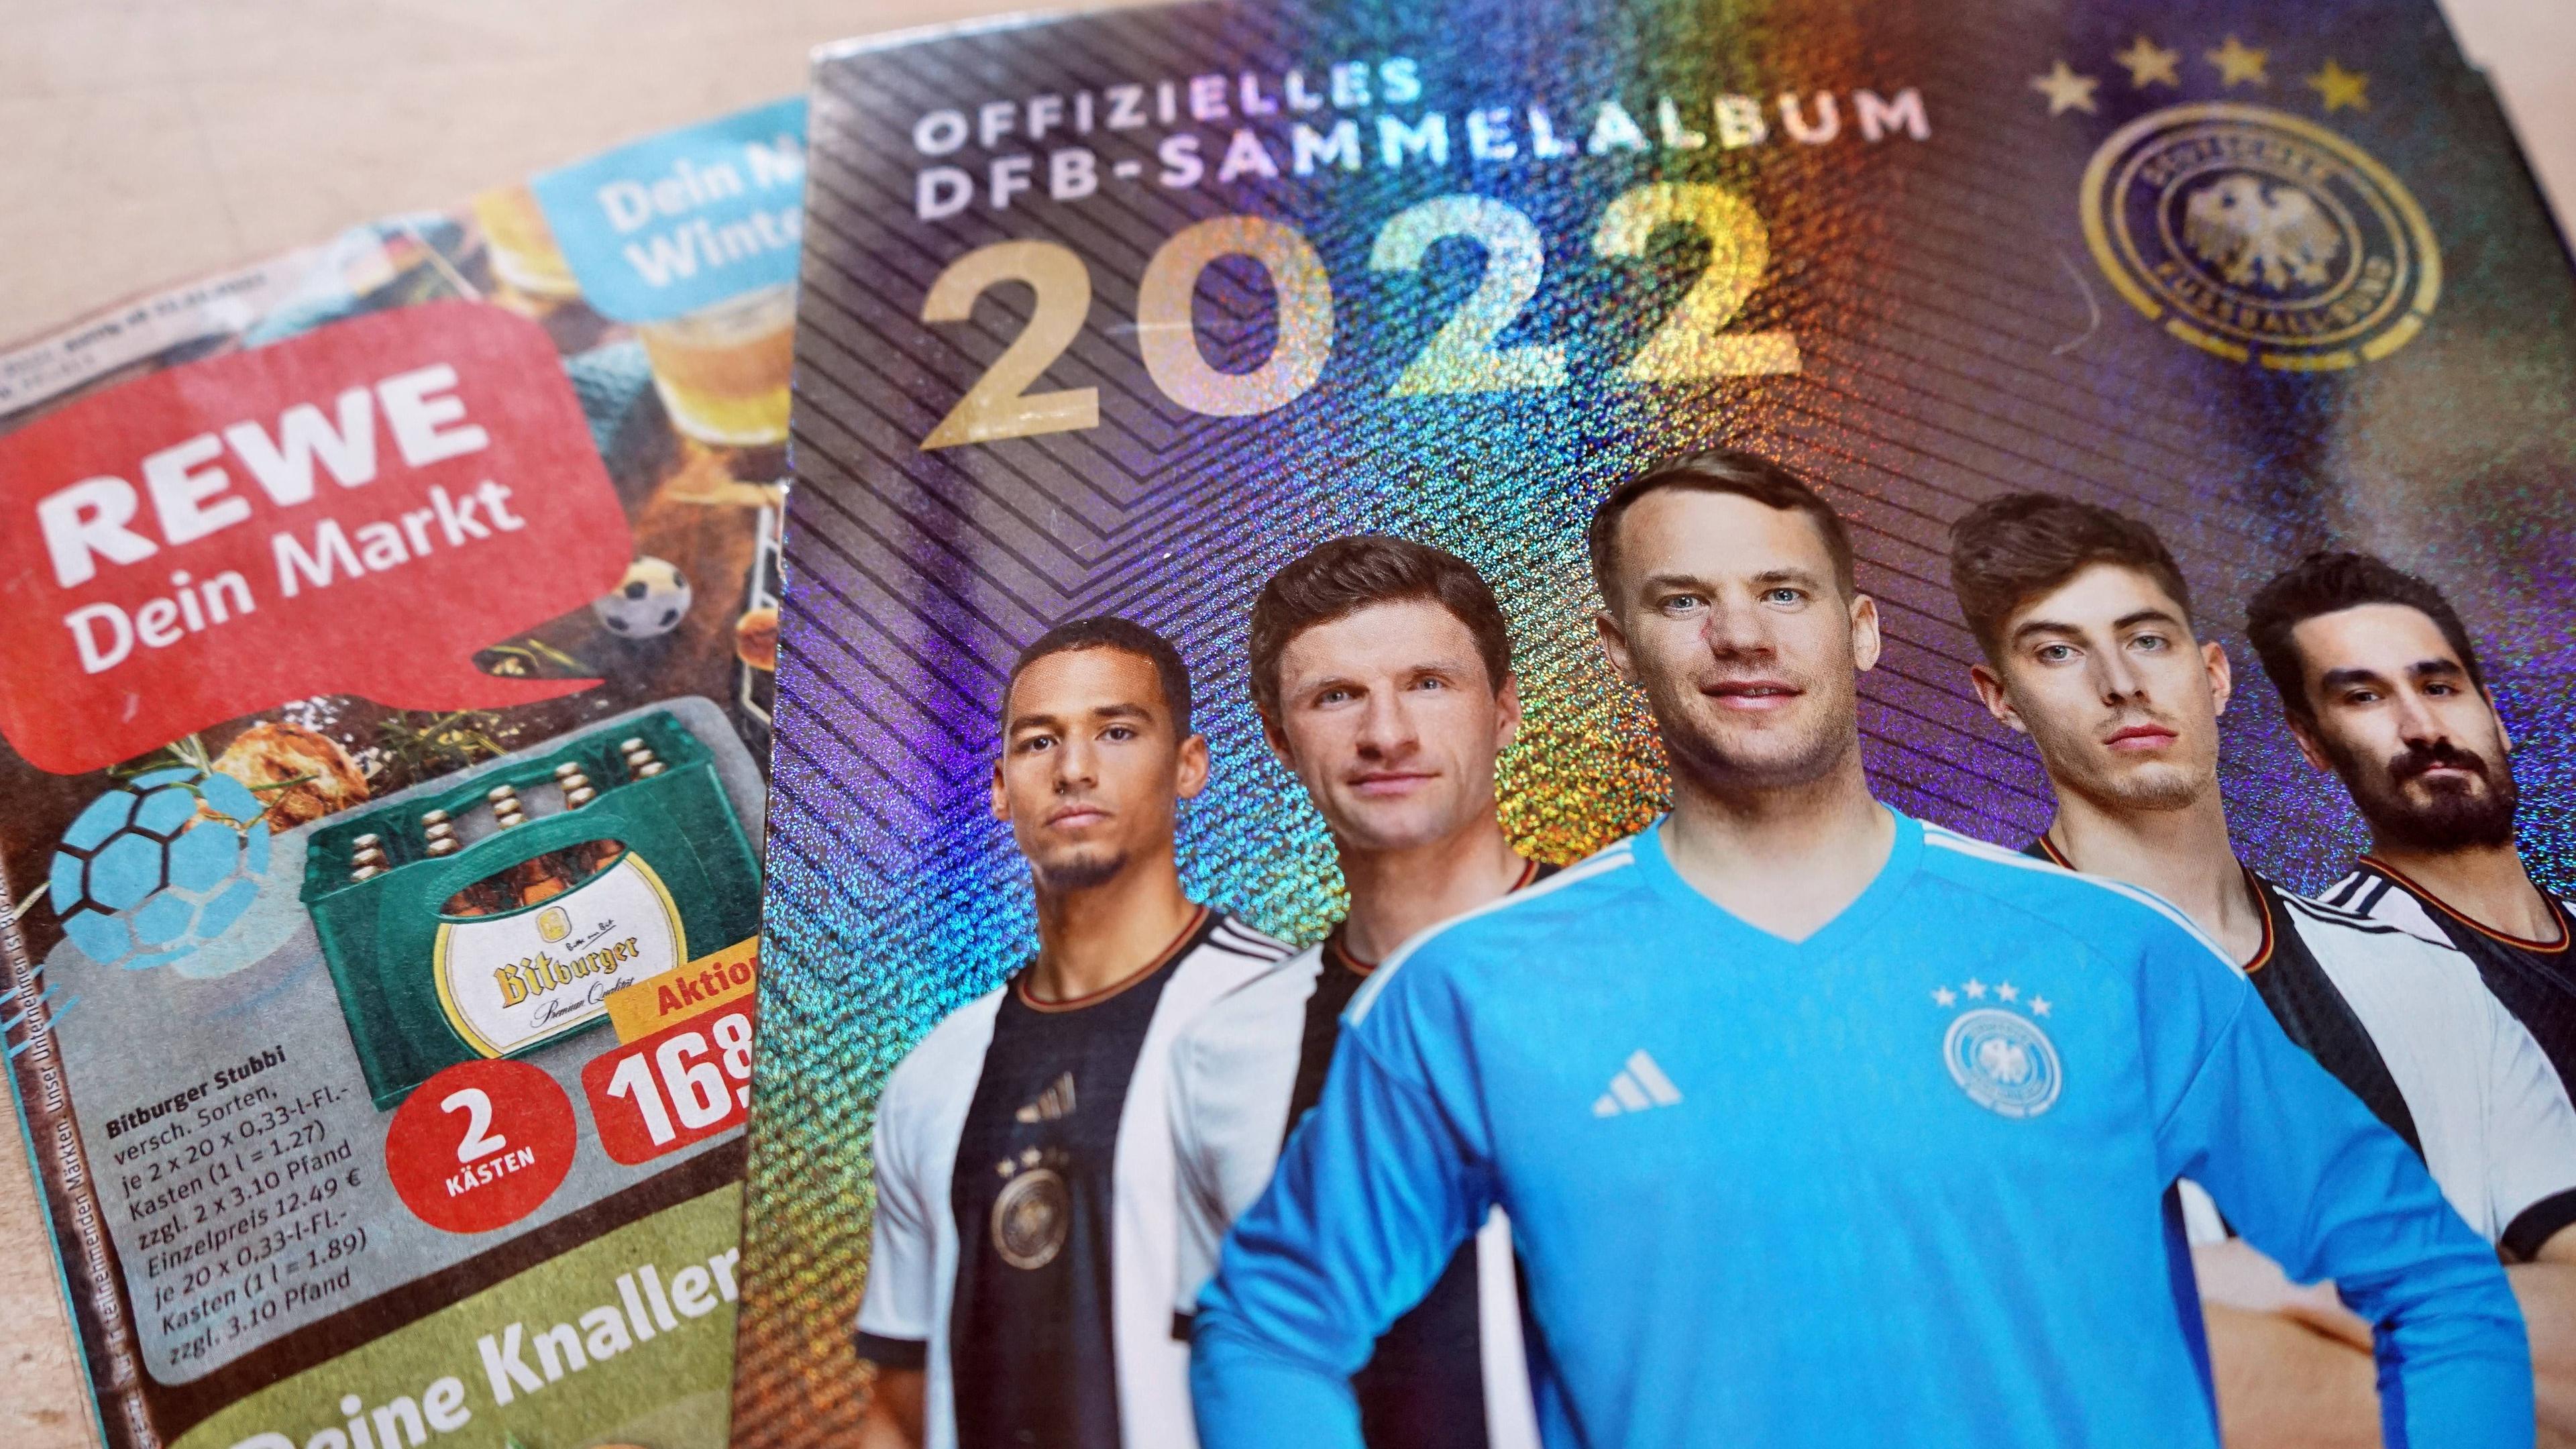 Rewe verschenkt jetzt das offizielle DFB-Sammelalbum